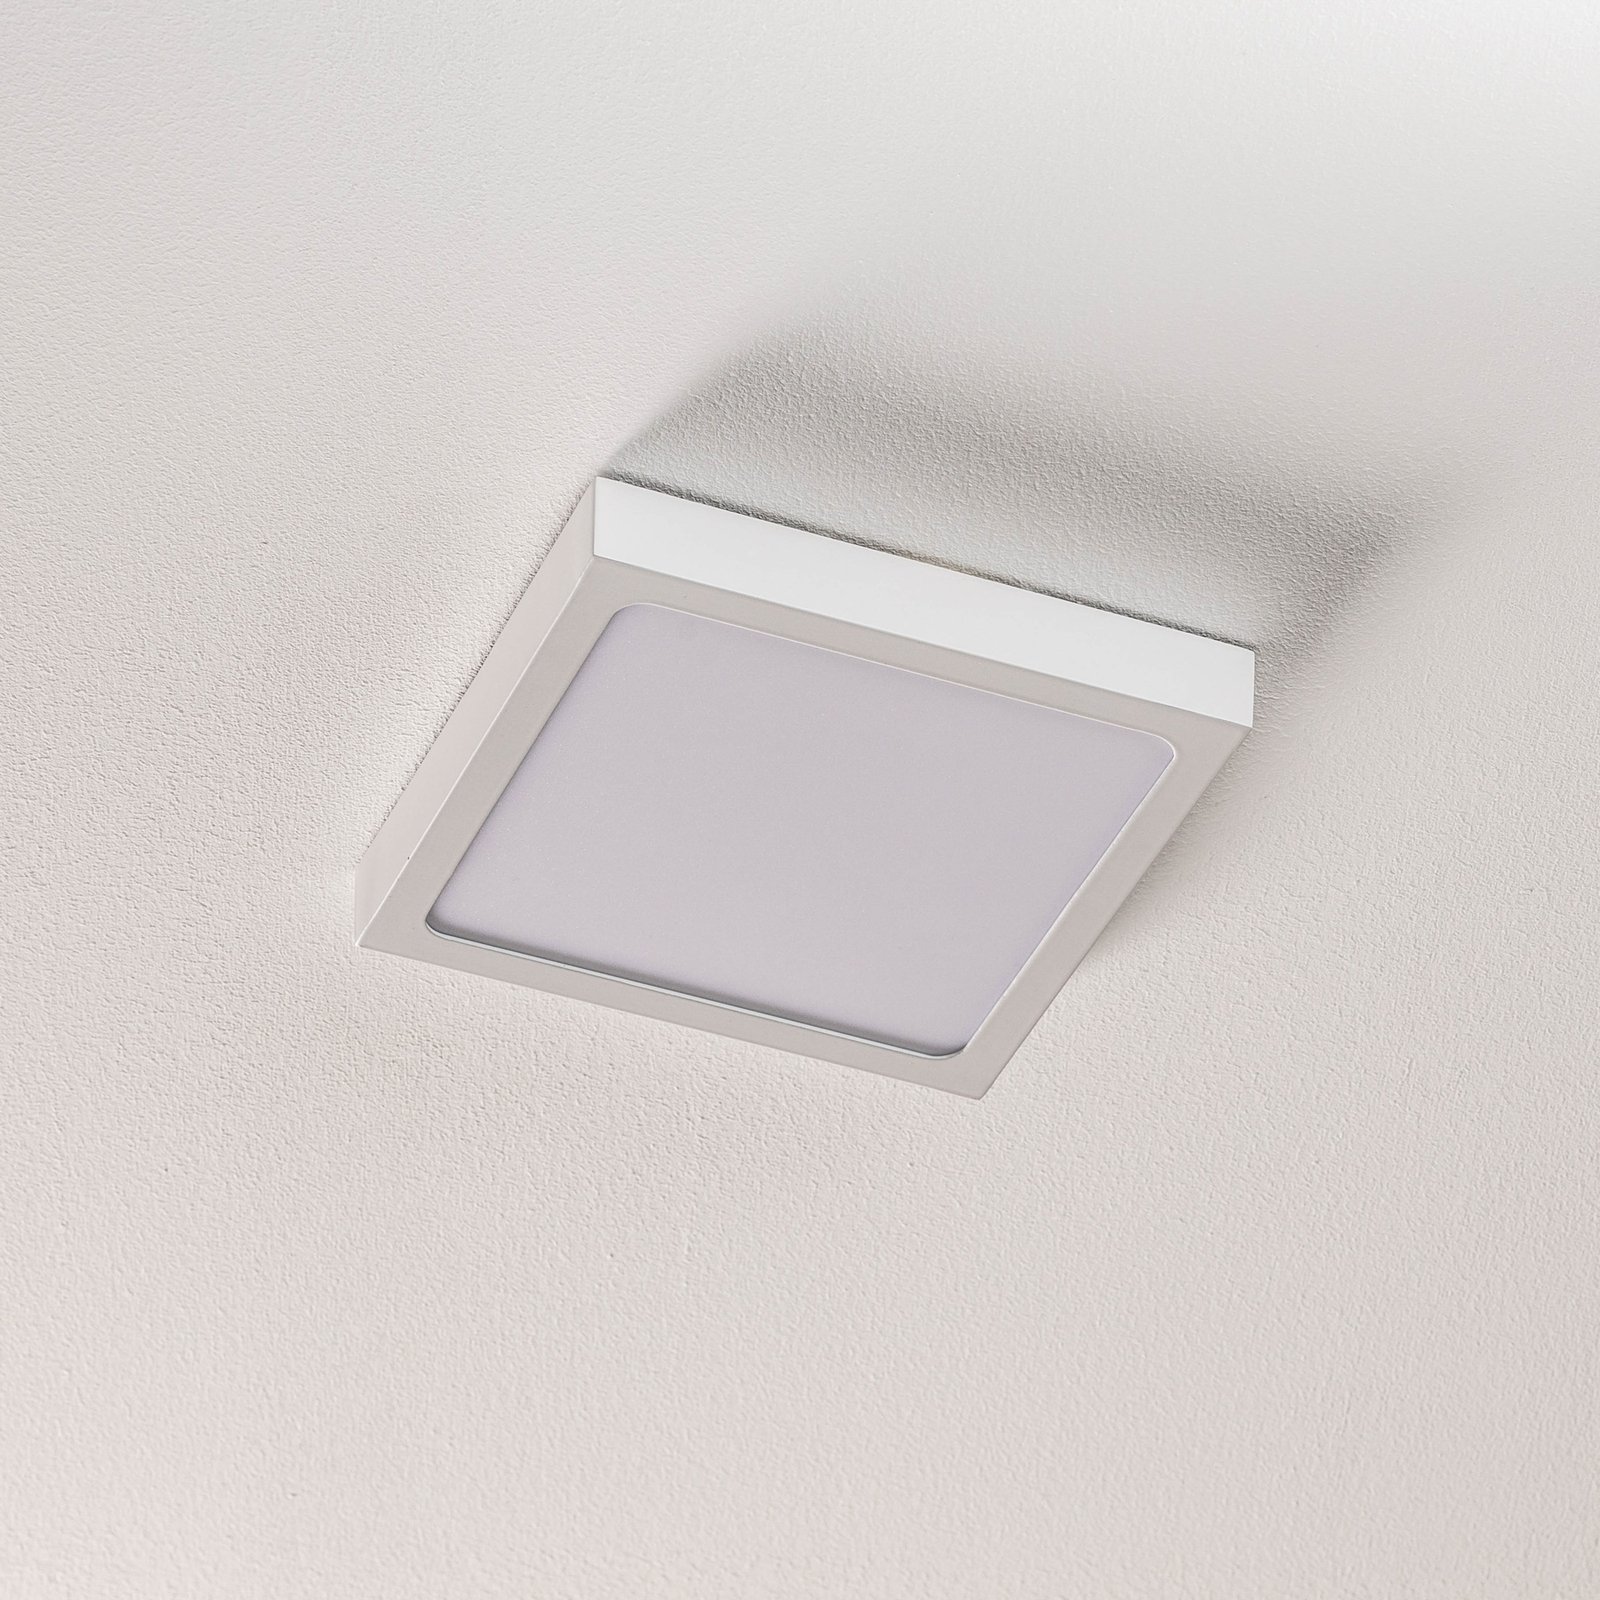 LED nástěnné světlo Vika, čtverec, bílá, 18x18cm